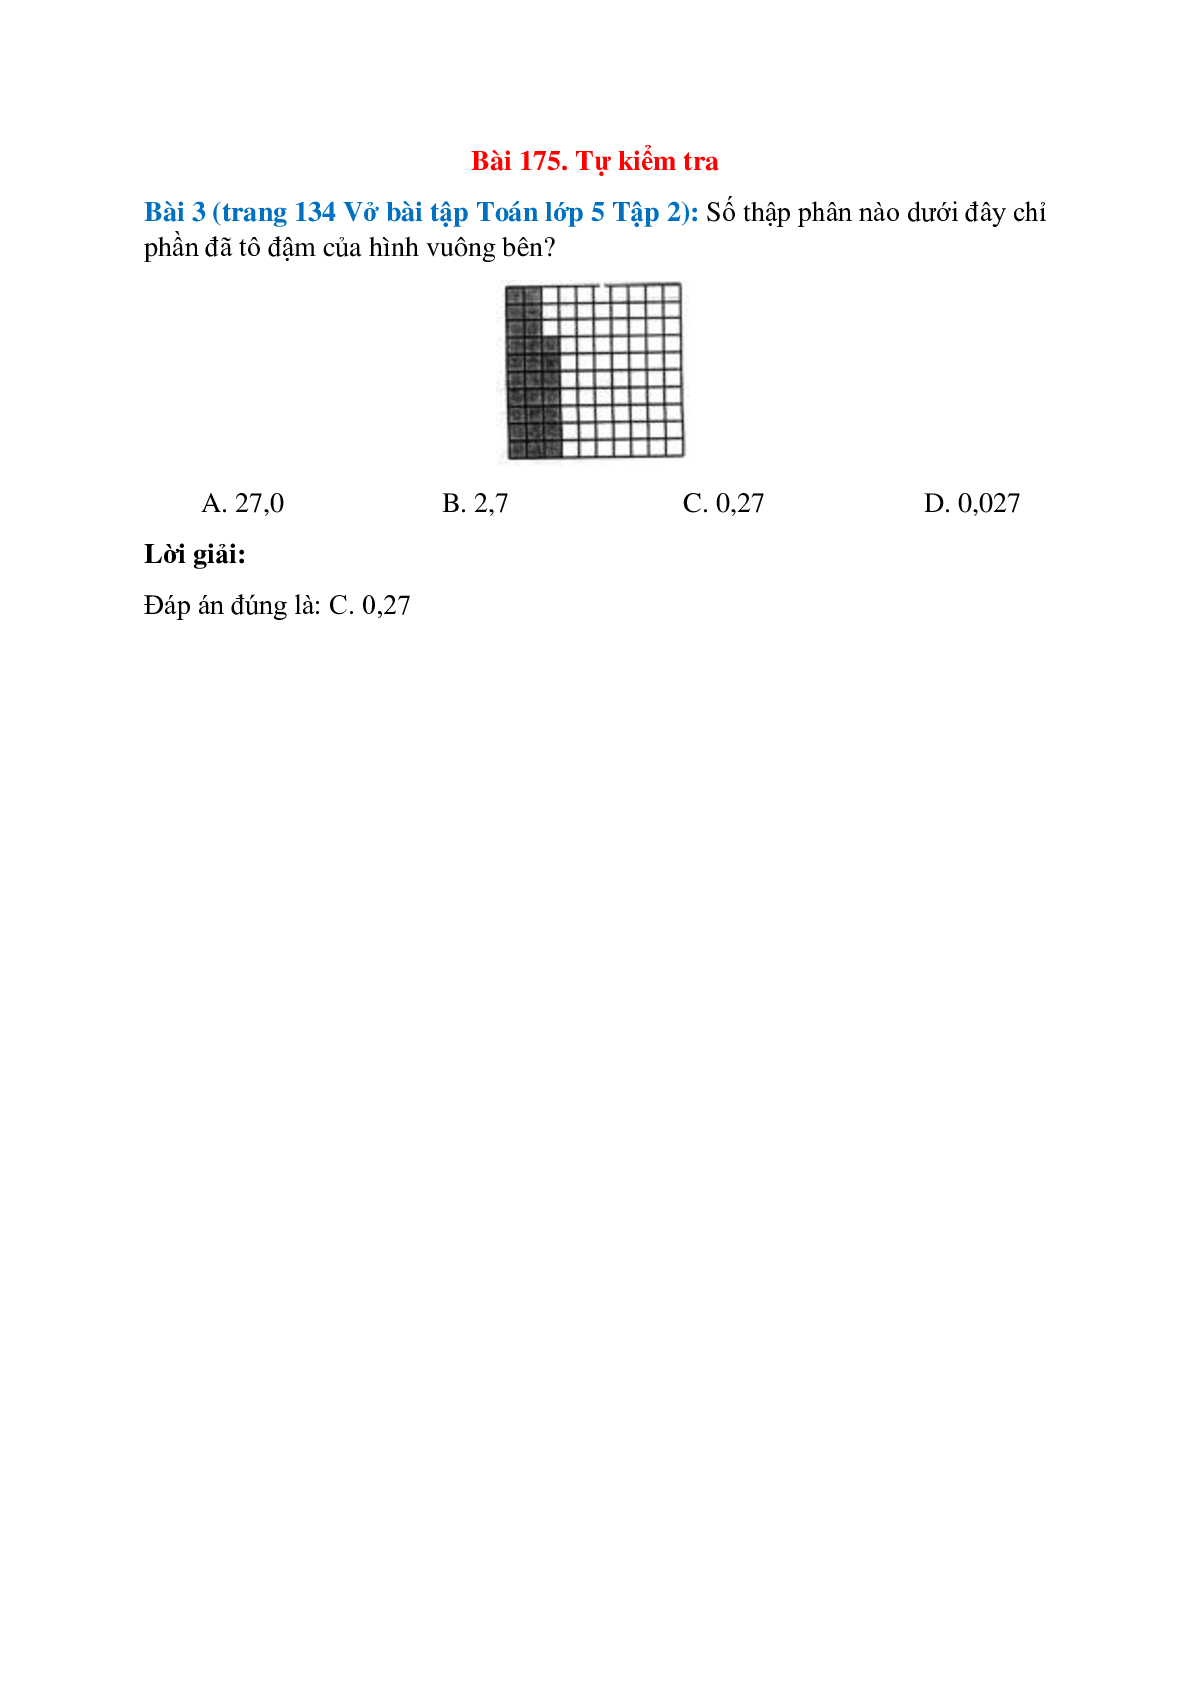 Số thập phân nào dưới đây chỉ phần đã tô đậm của hình vuông bên: 27,0; 2,7   (trang 1)